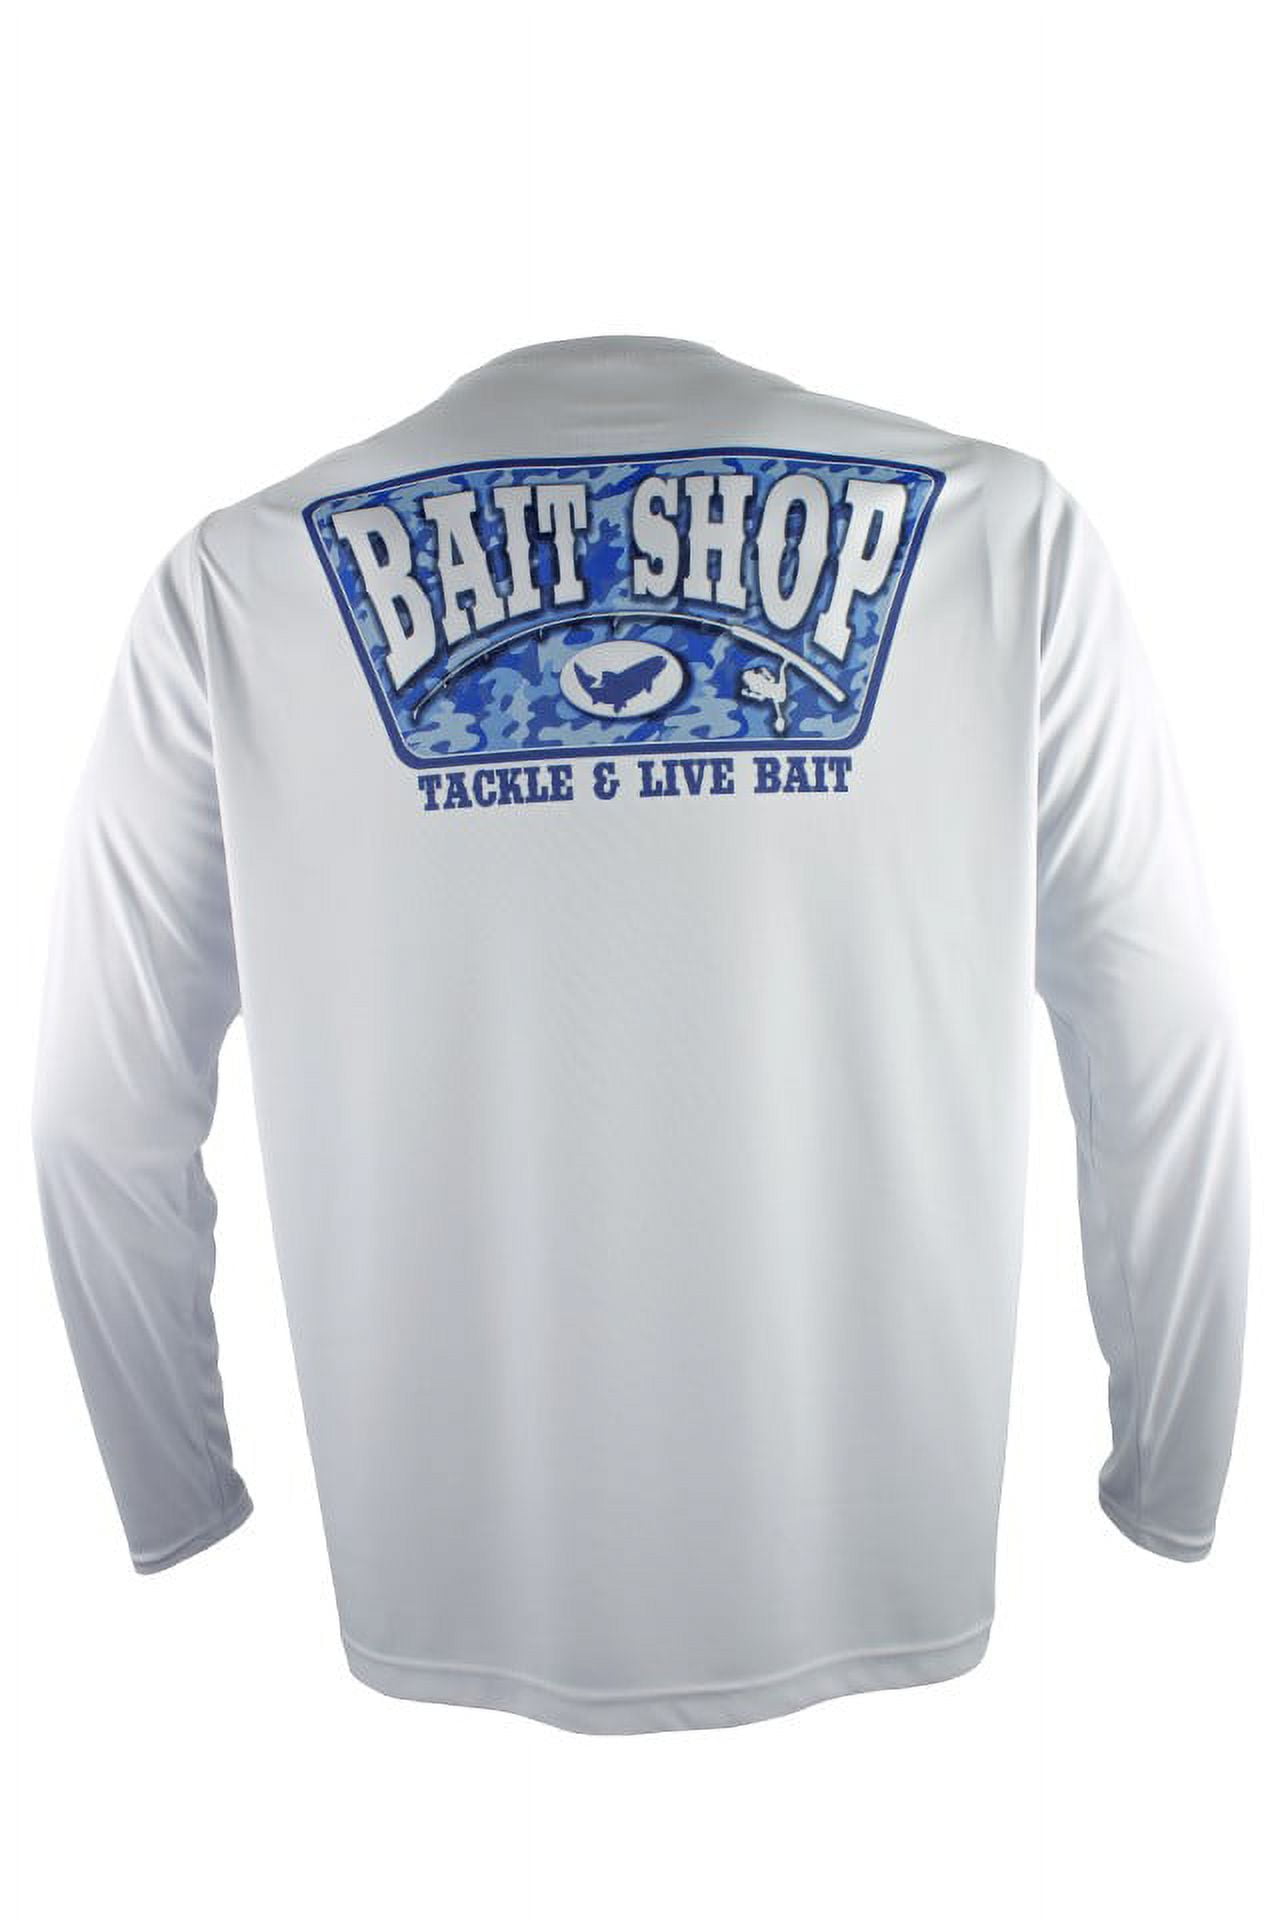 FinTech Men's Long Sleeve Fishing Shirt Camo Bait Shop - 2XL